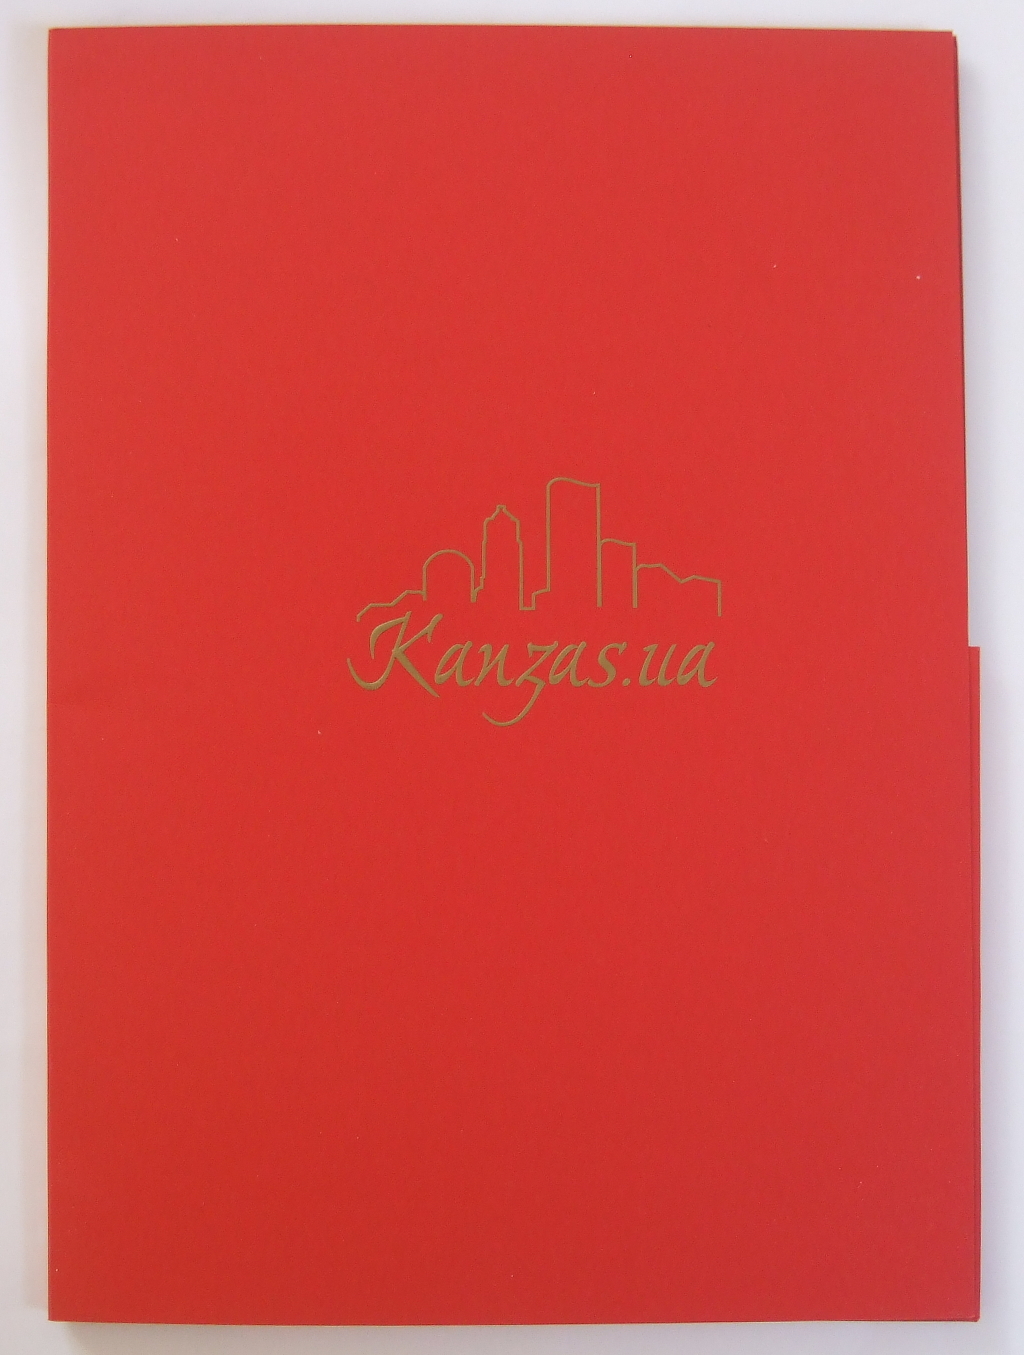 Печать папок «Канзас». Полиграфия типографии Макрос, изготовление папок, спецификация 956991-1